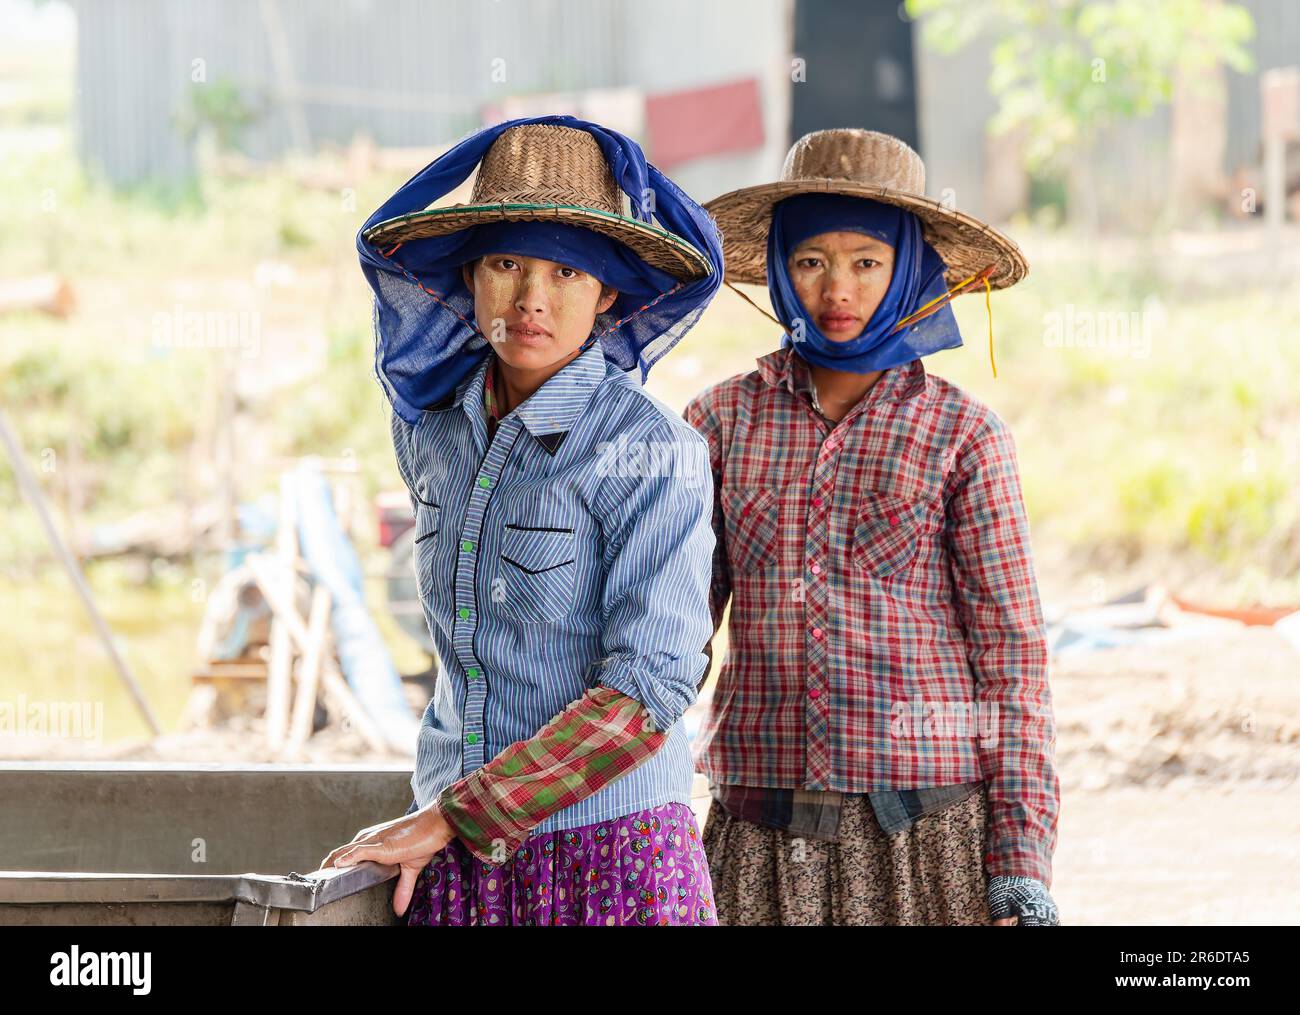 Zwei junge Arbeiterinnen auf einer Fischfarm im Irrawaddy Delta in Myanmar. Geringe Schärfentiefe mit nur der Frau links im Fokus. Stockfoto